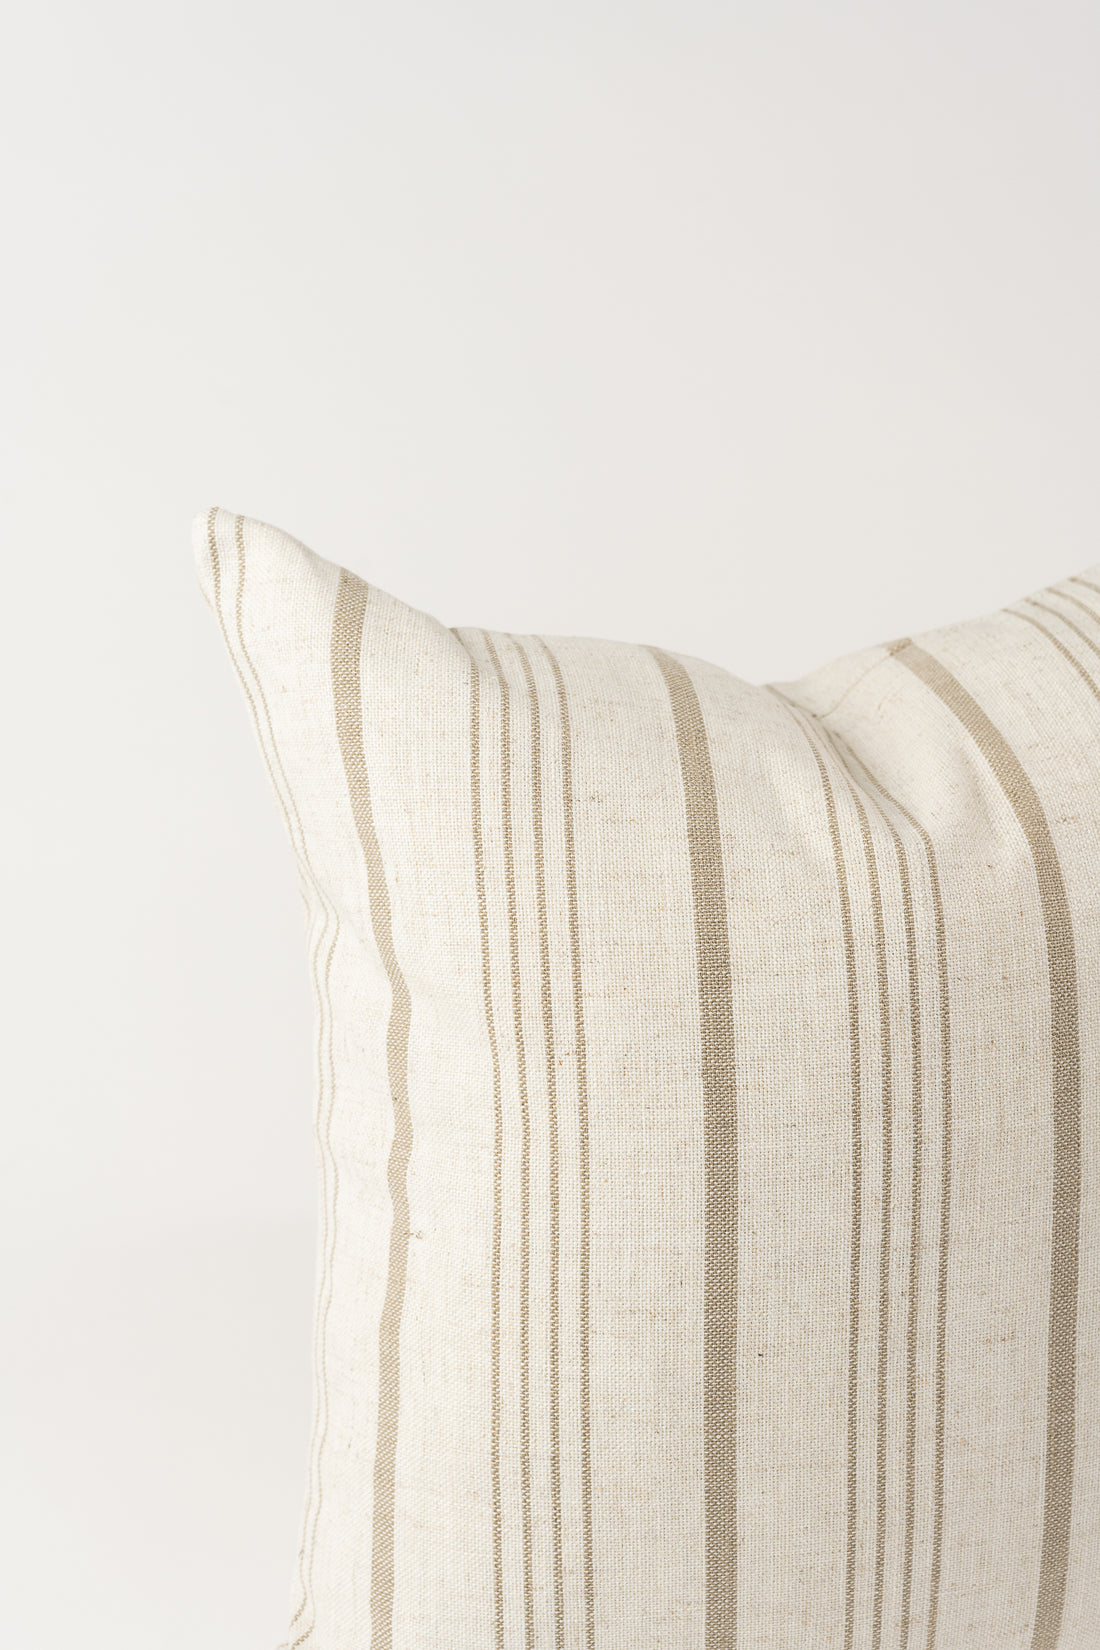 Kindred Cushion - Linen - Amalfi Stripe